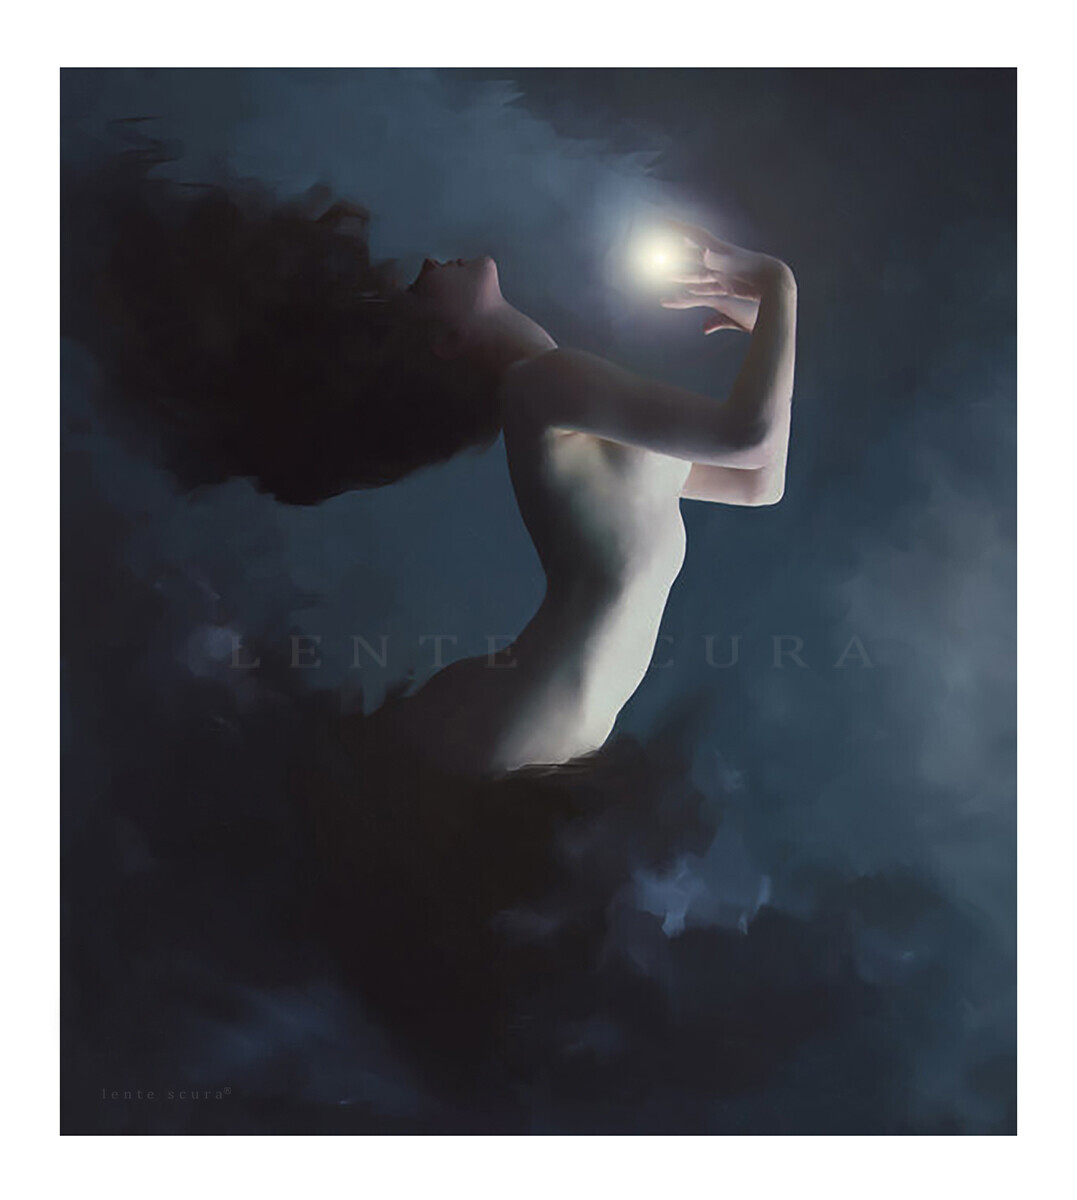 La Regina della Luce della Luna
Modello: Ingrid Nilsenson
di Lente Scura
Diritto d'autore (copyright)